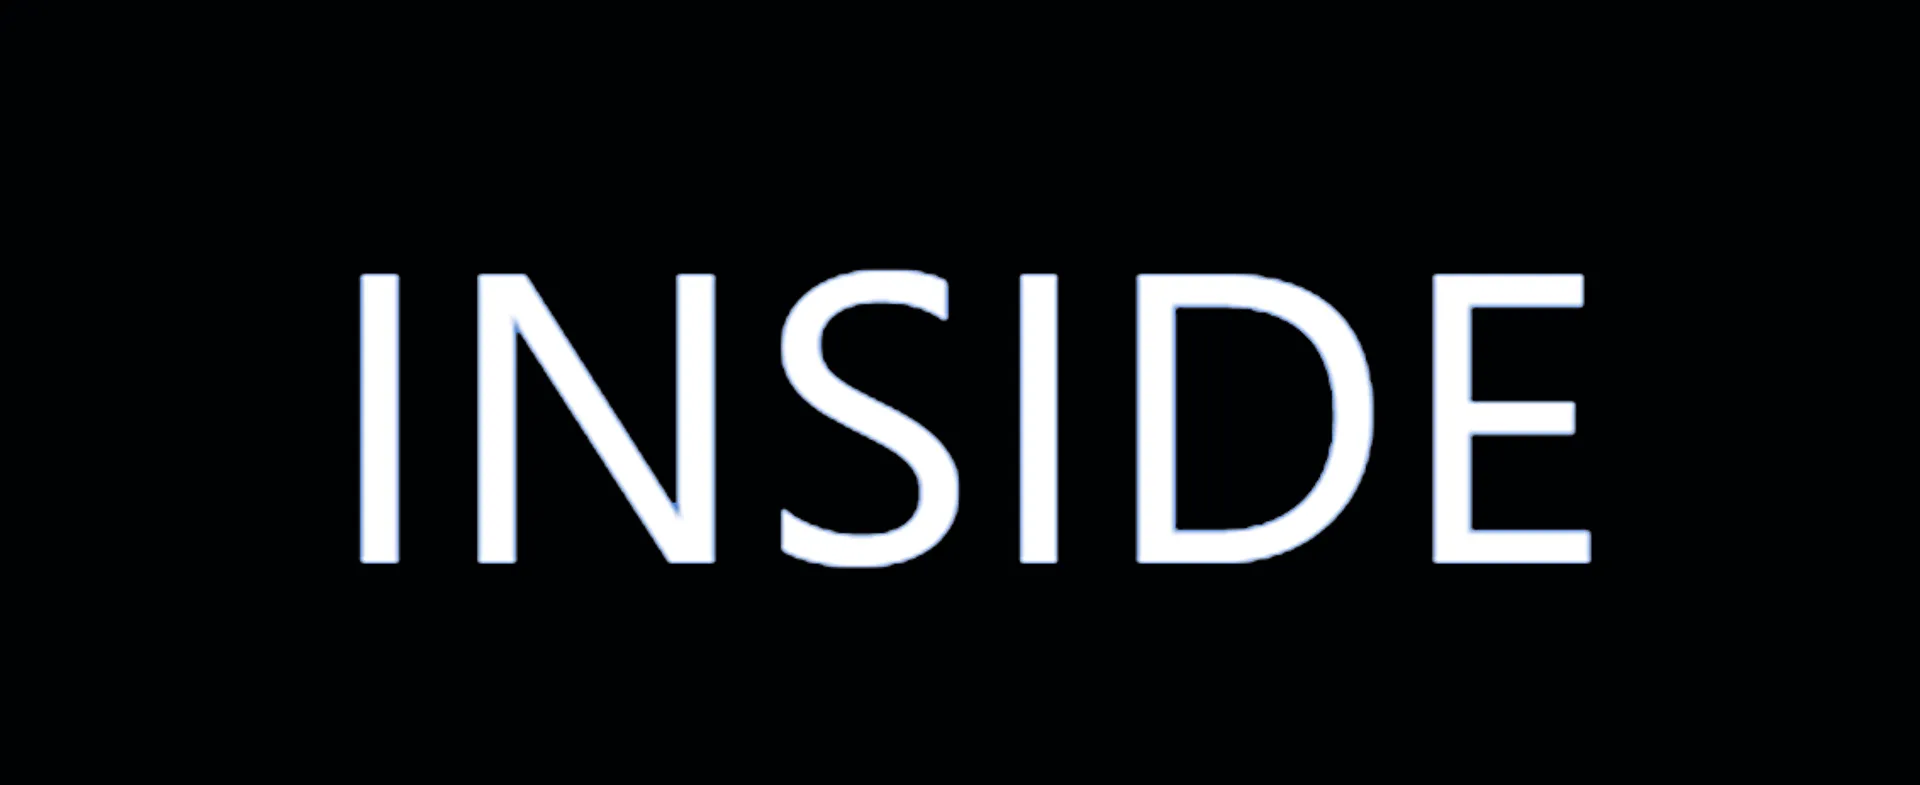 INSIDE logo